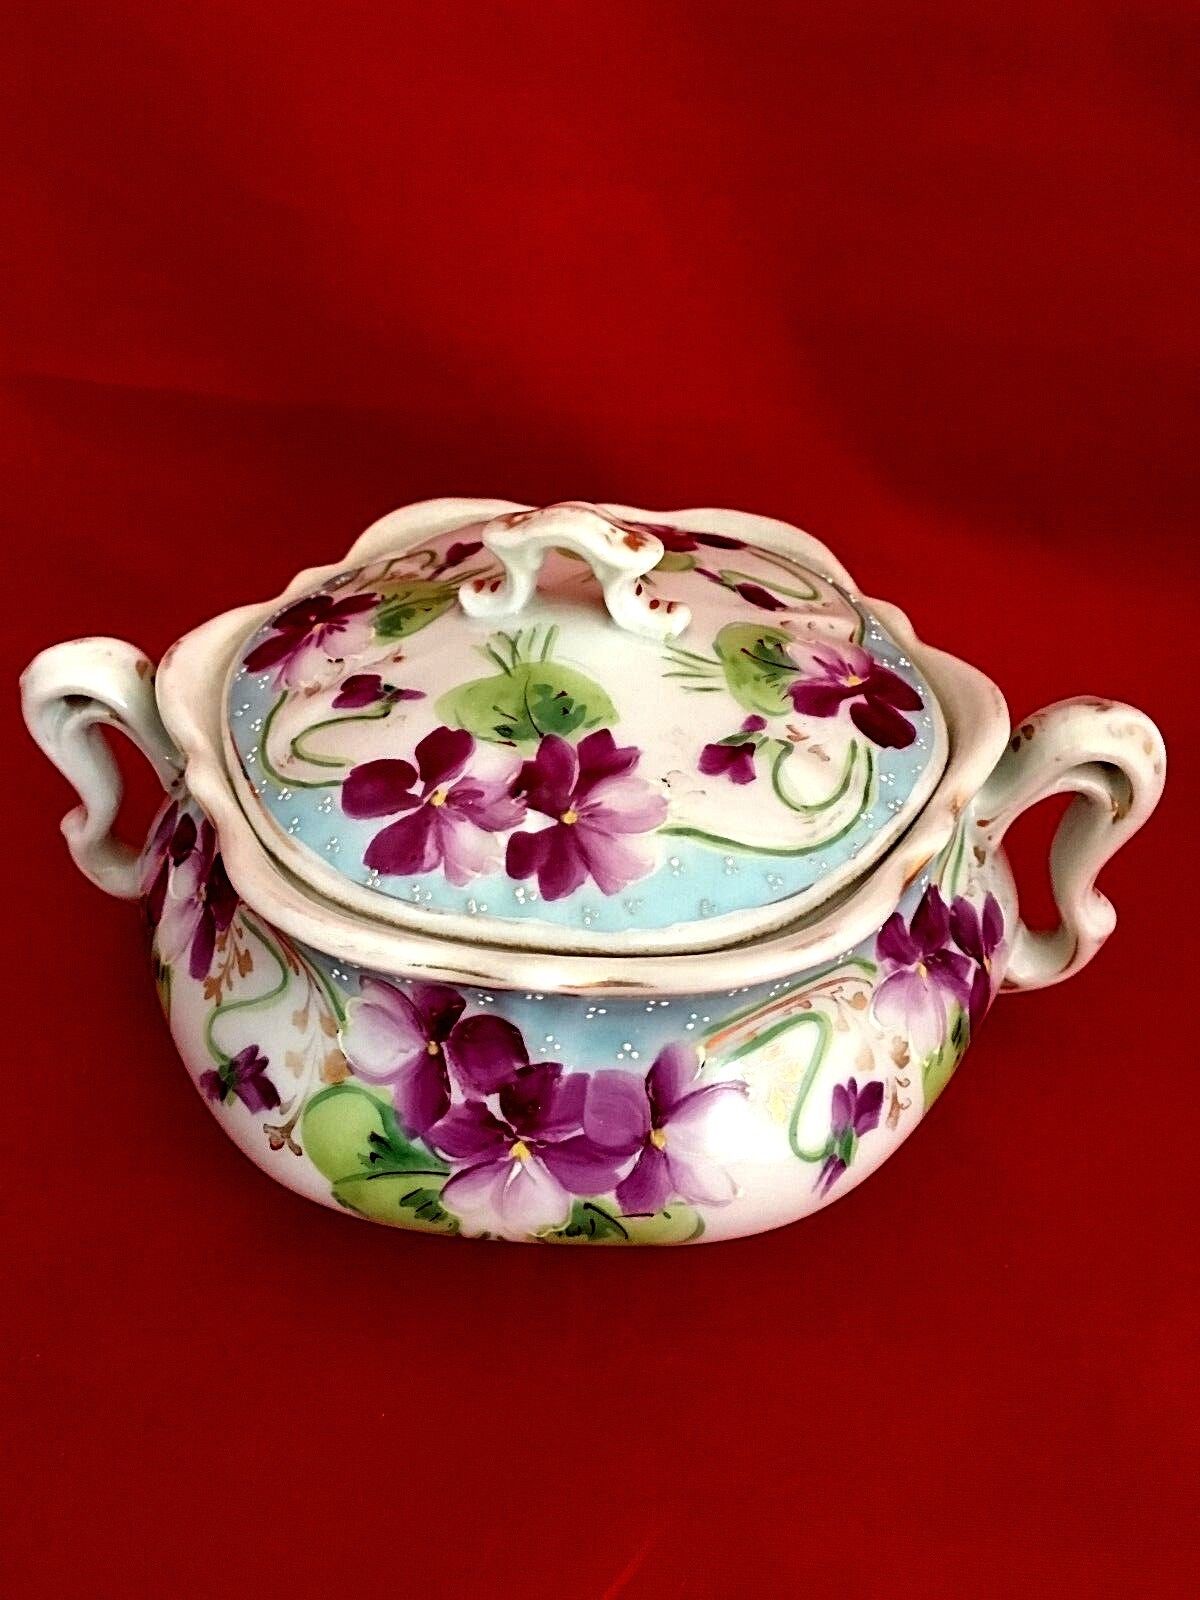 Antique Nippon Bowl Lidded with under plate cobalt edged floral violets design Без бренда - фотография #4